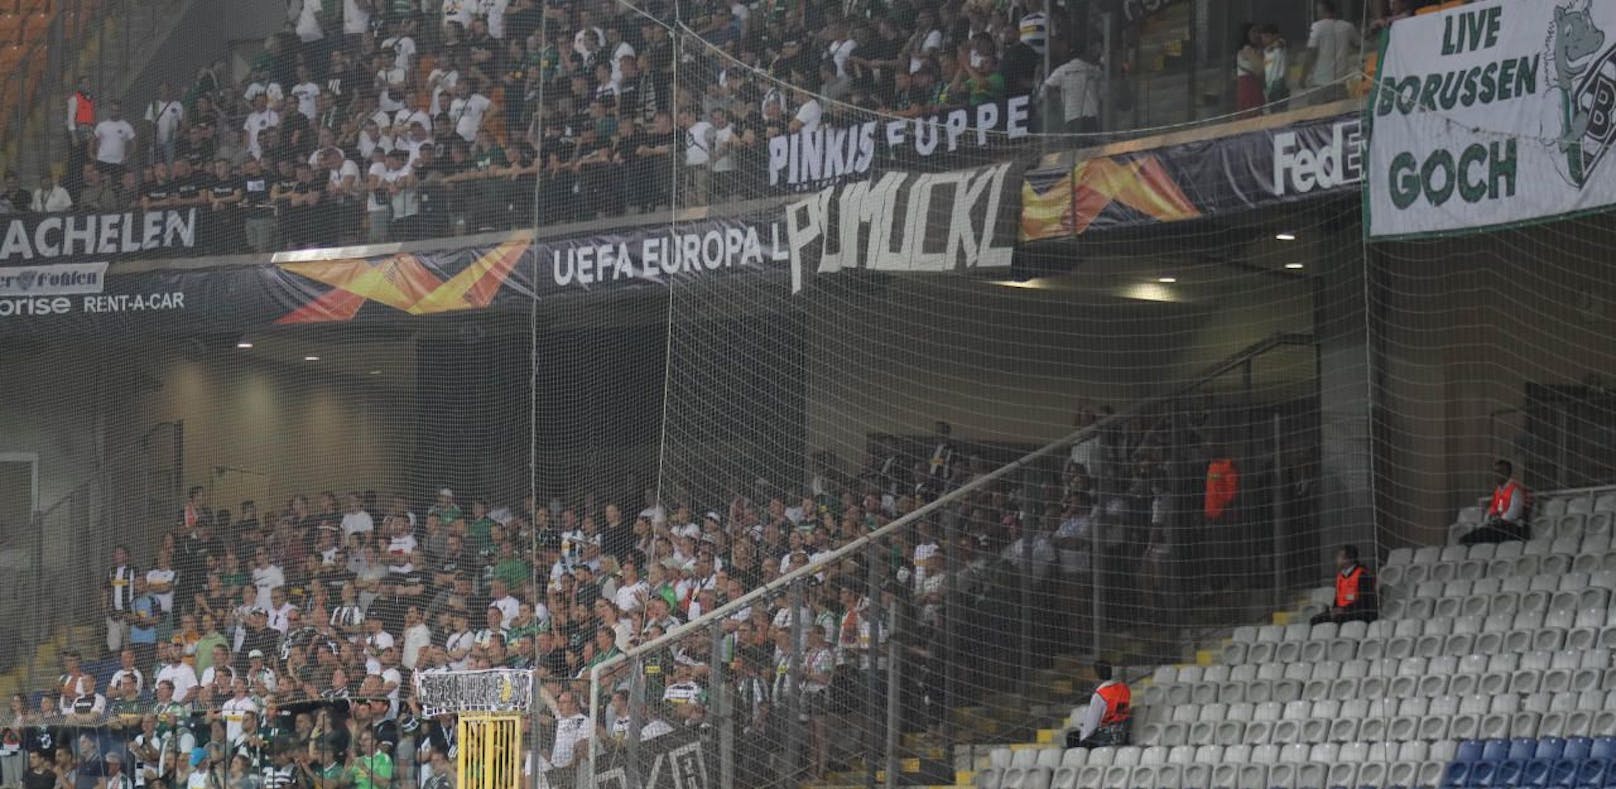 Borussia-Fans im Auswärtssektor bei Basaksehir.